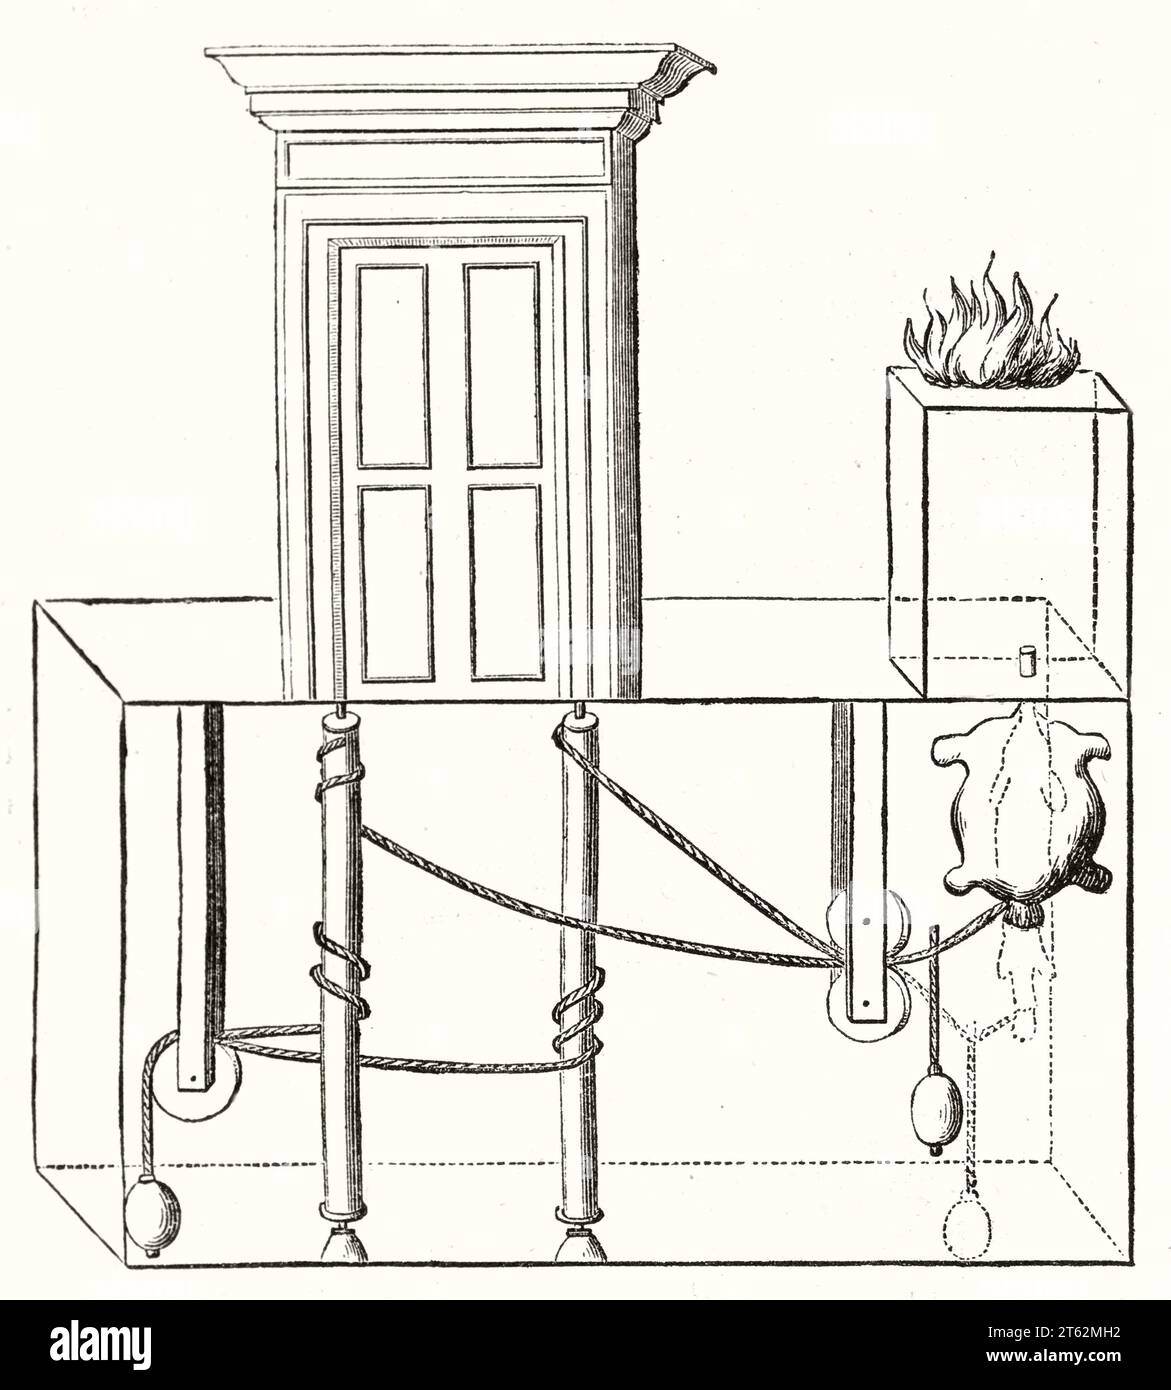 Ancienne illustration schématique d'un dispositif pour ouvrir la porte lorsque le feu de l'autel est allumé. Par auteur non identifié, publ. Sur magasin pittoresque, Paris, 1849 Banque D'Images